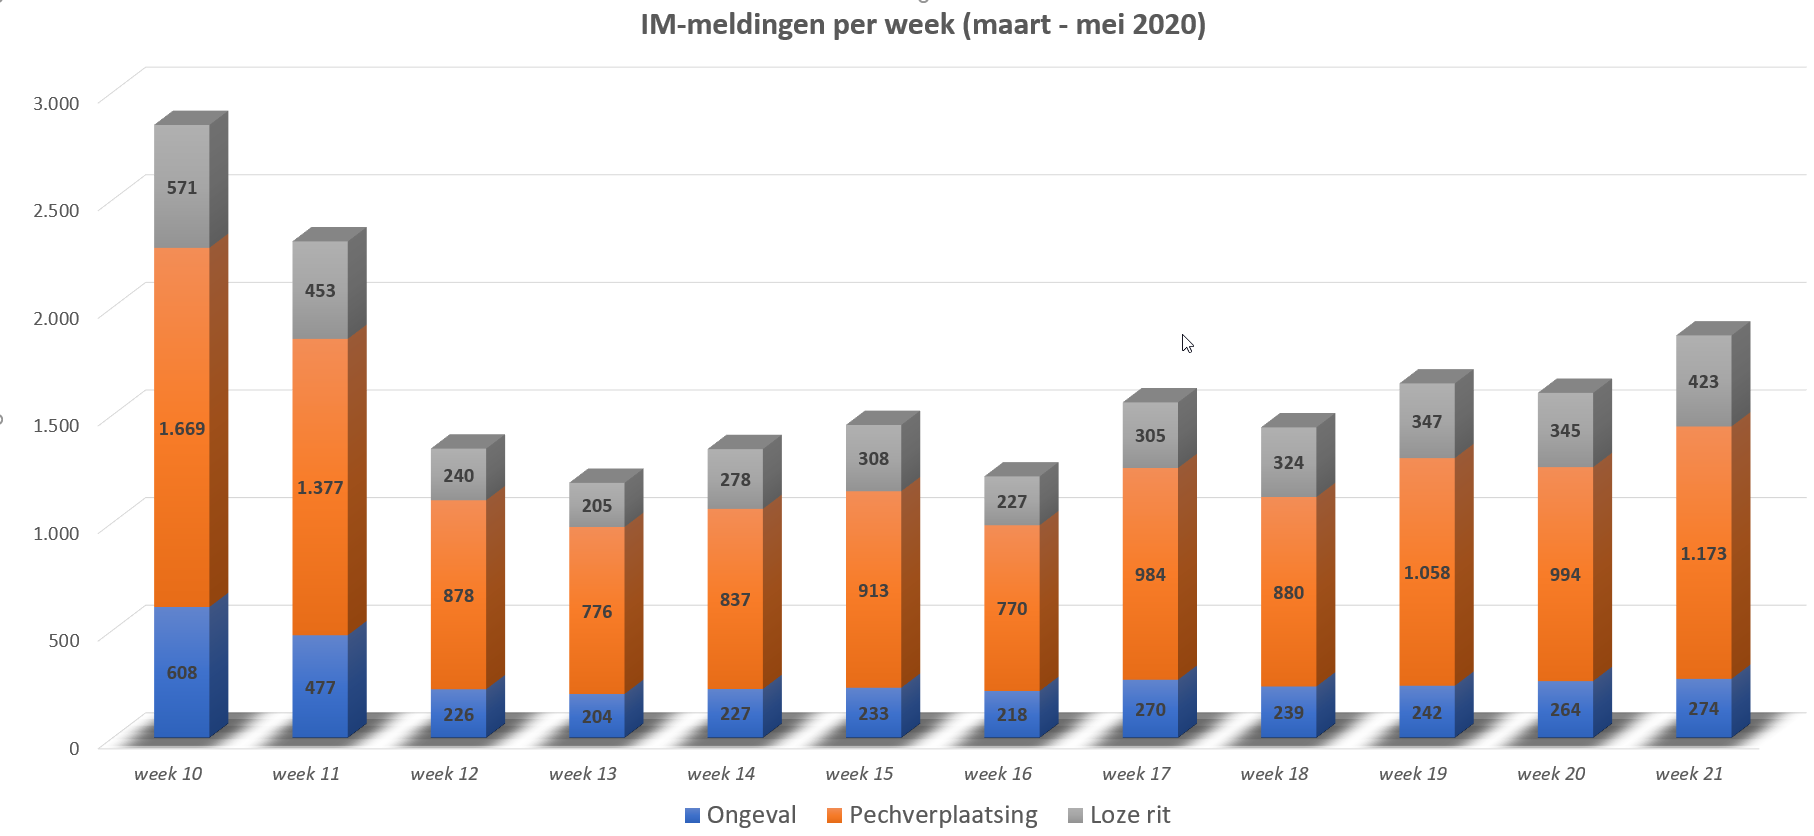 IM-meldingen per week (maart-mei 2020)